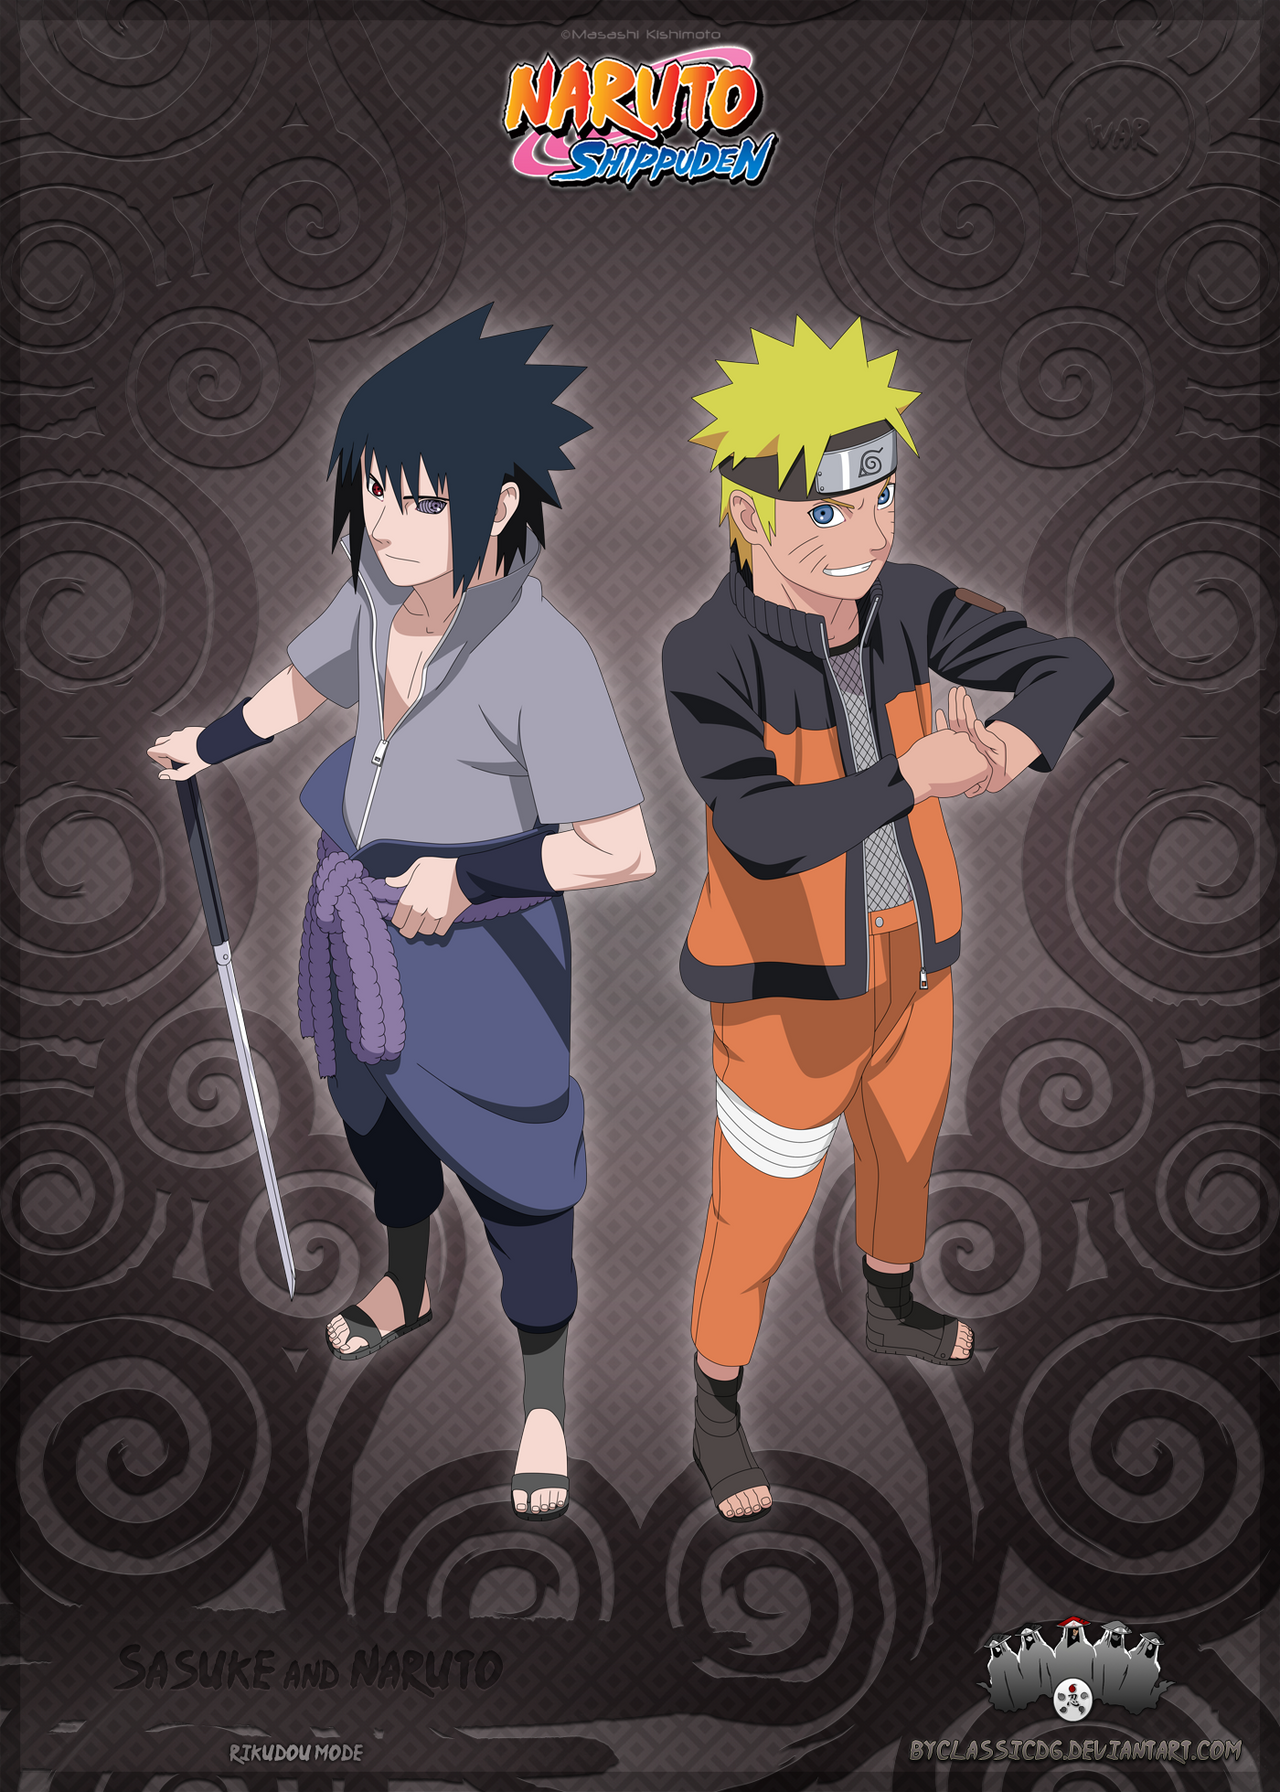 Naruto classico  Naruto dan sasuke, Naruto uzumaki, Naruto